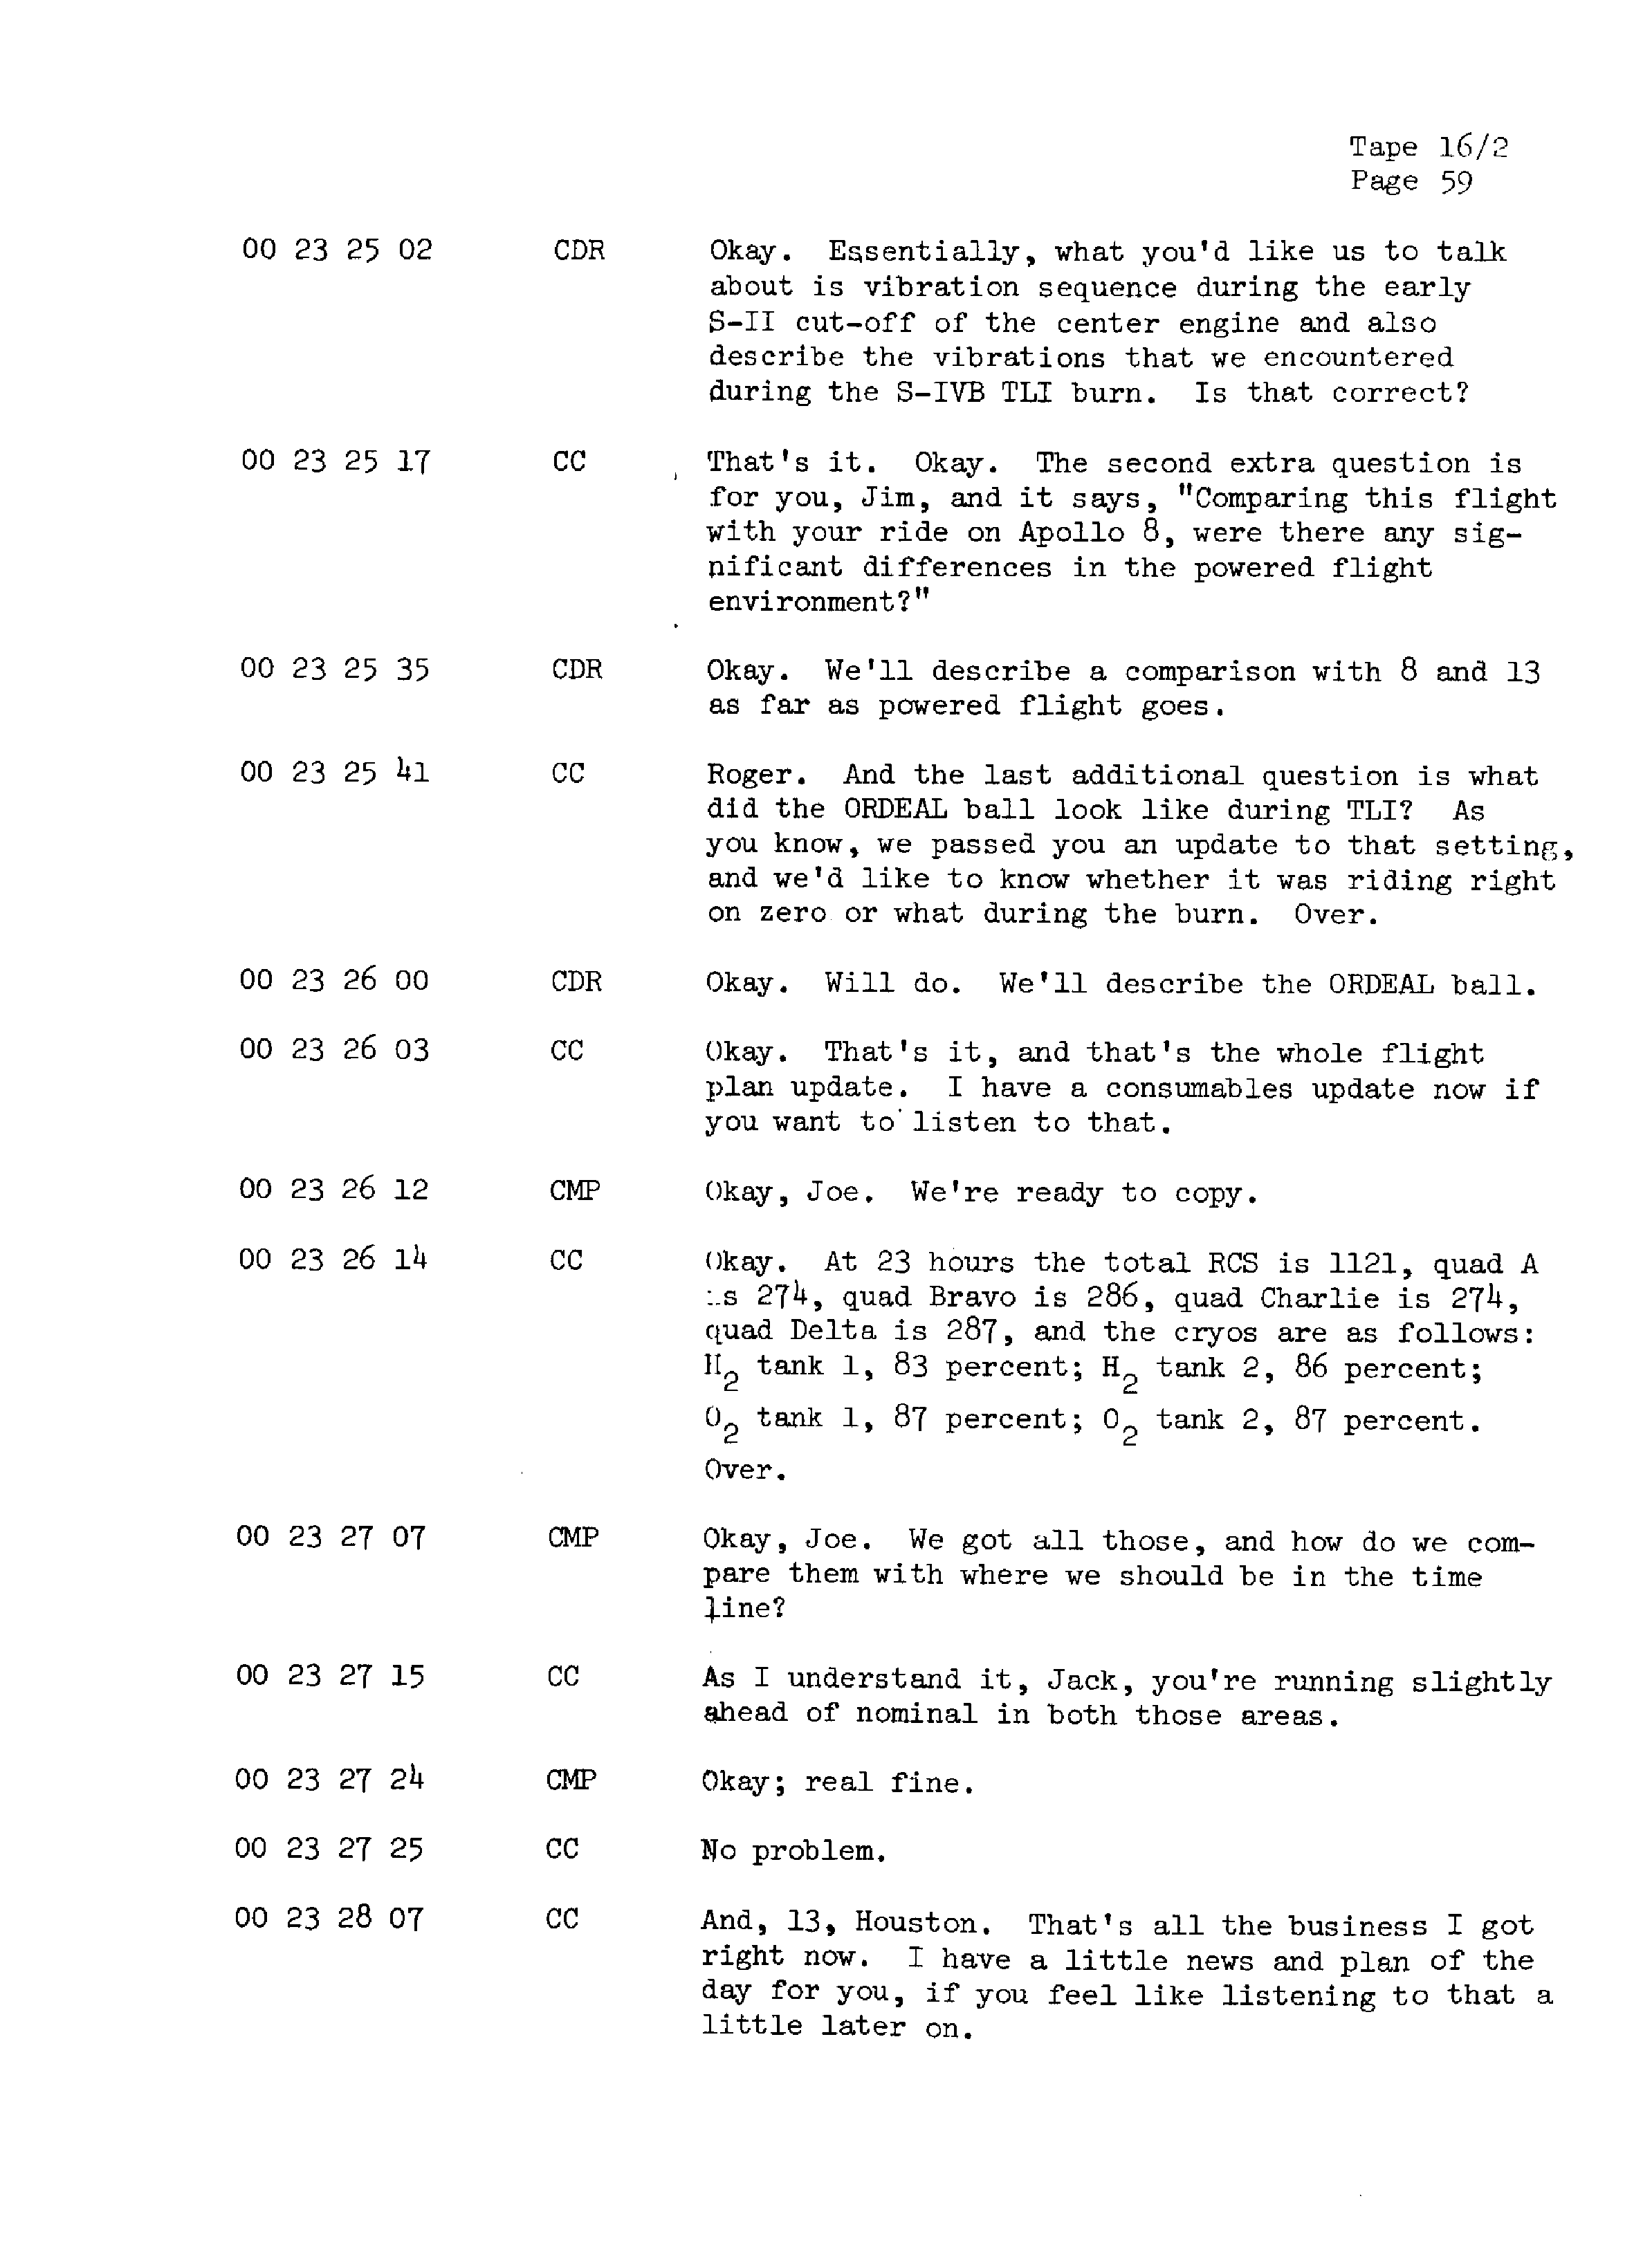 Page 66 of Apollo 13’s original transcript